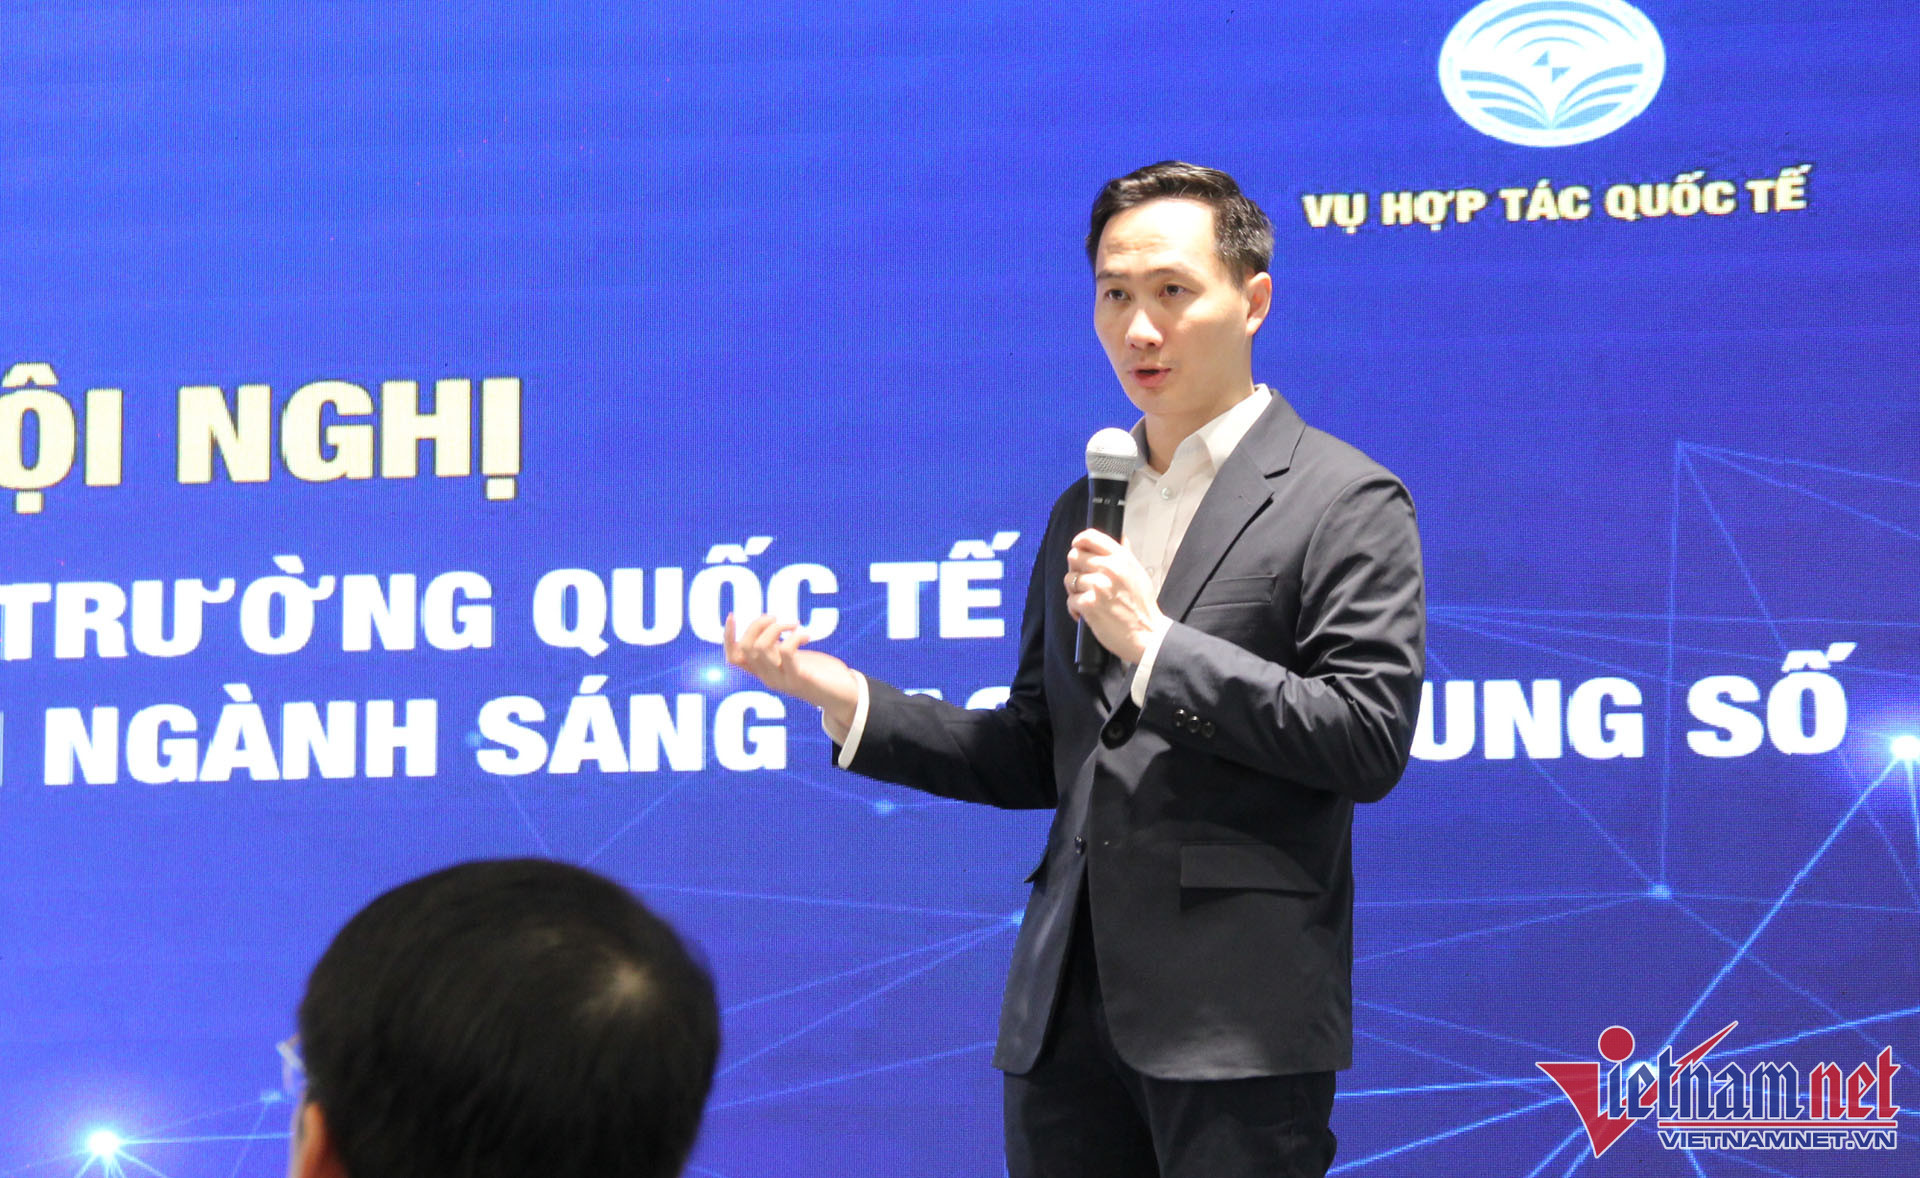 Thị trường quốc tế còn nhiều dư địa cho các doanh nghiệp công nghệ số Việt